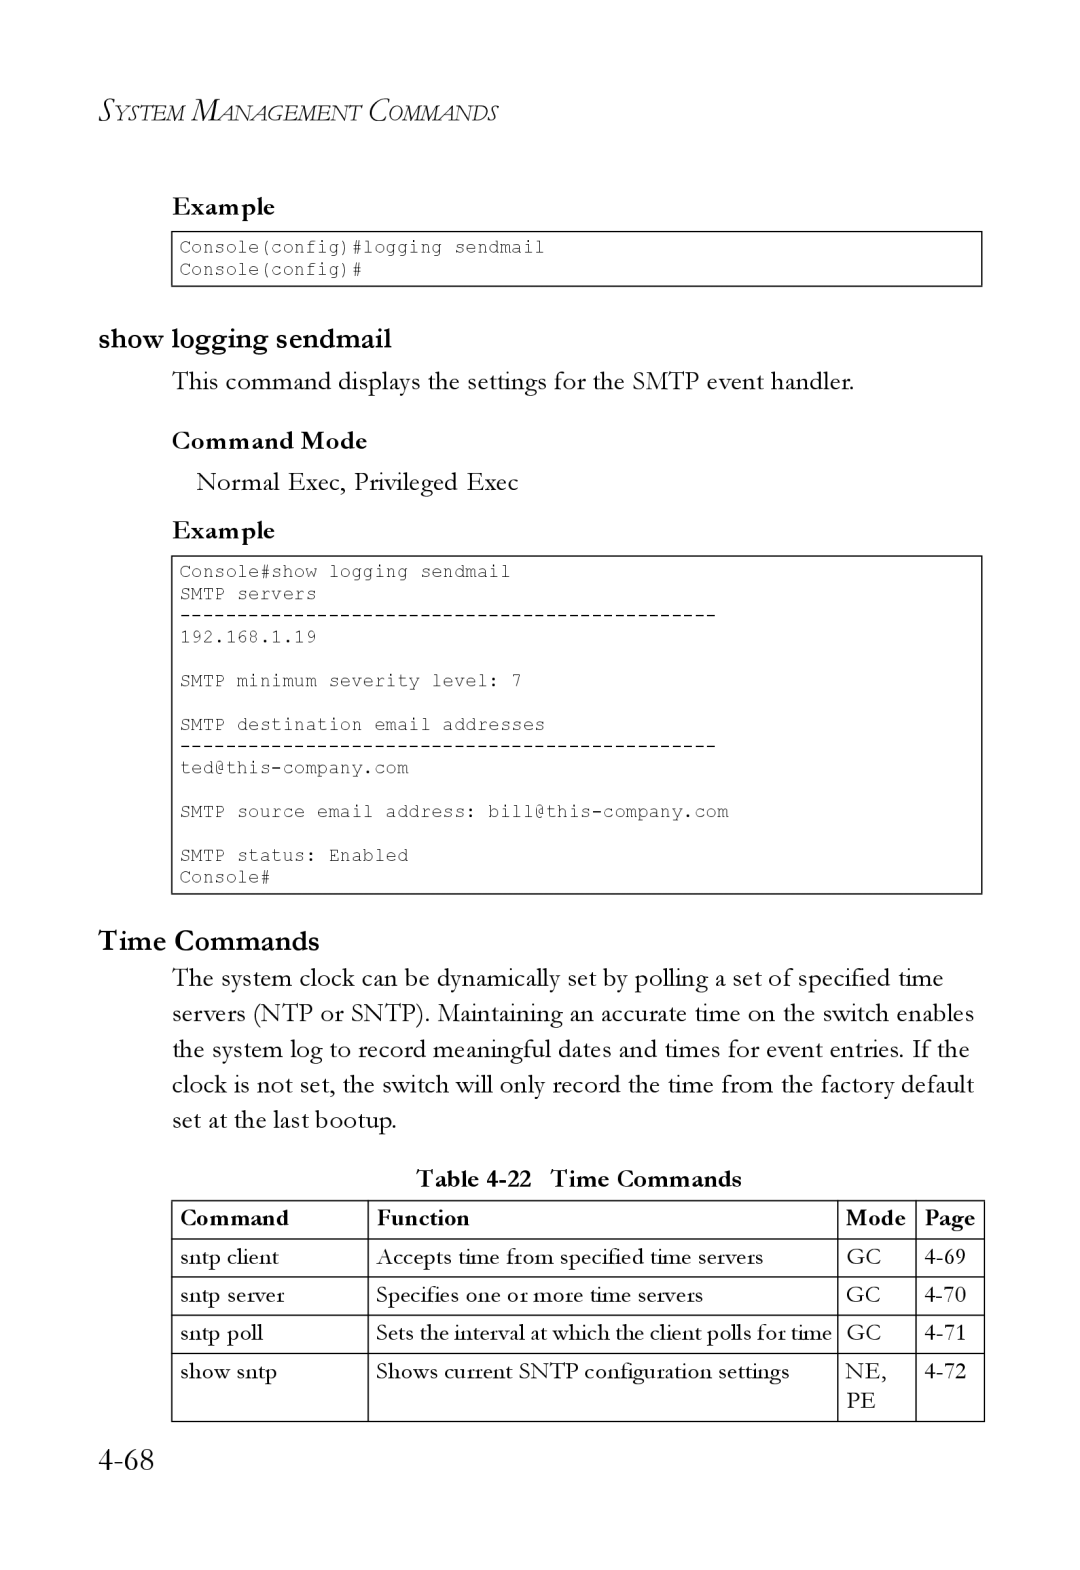 SMC Networks SMC6824M manual Show logging sendmail, Time Commands 